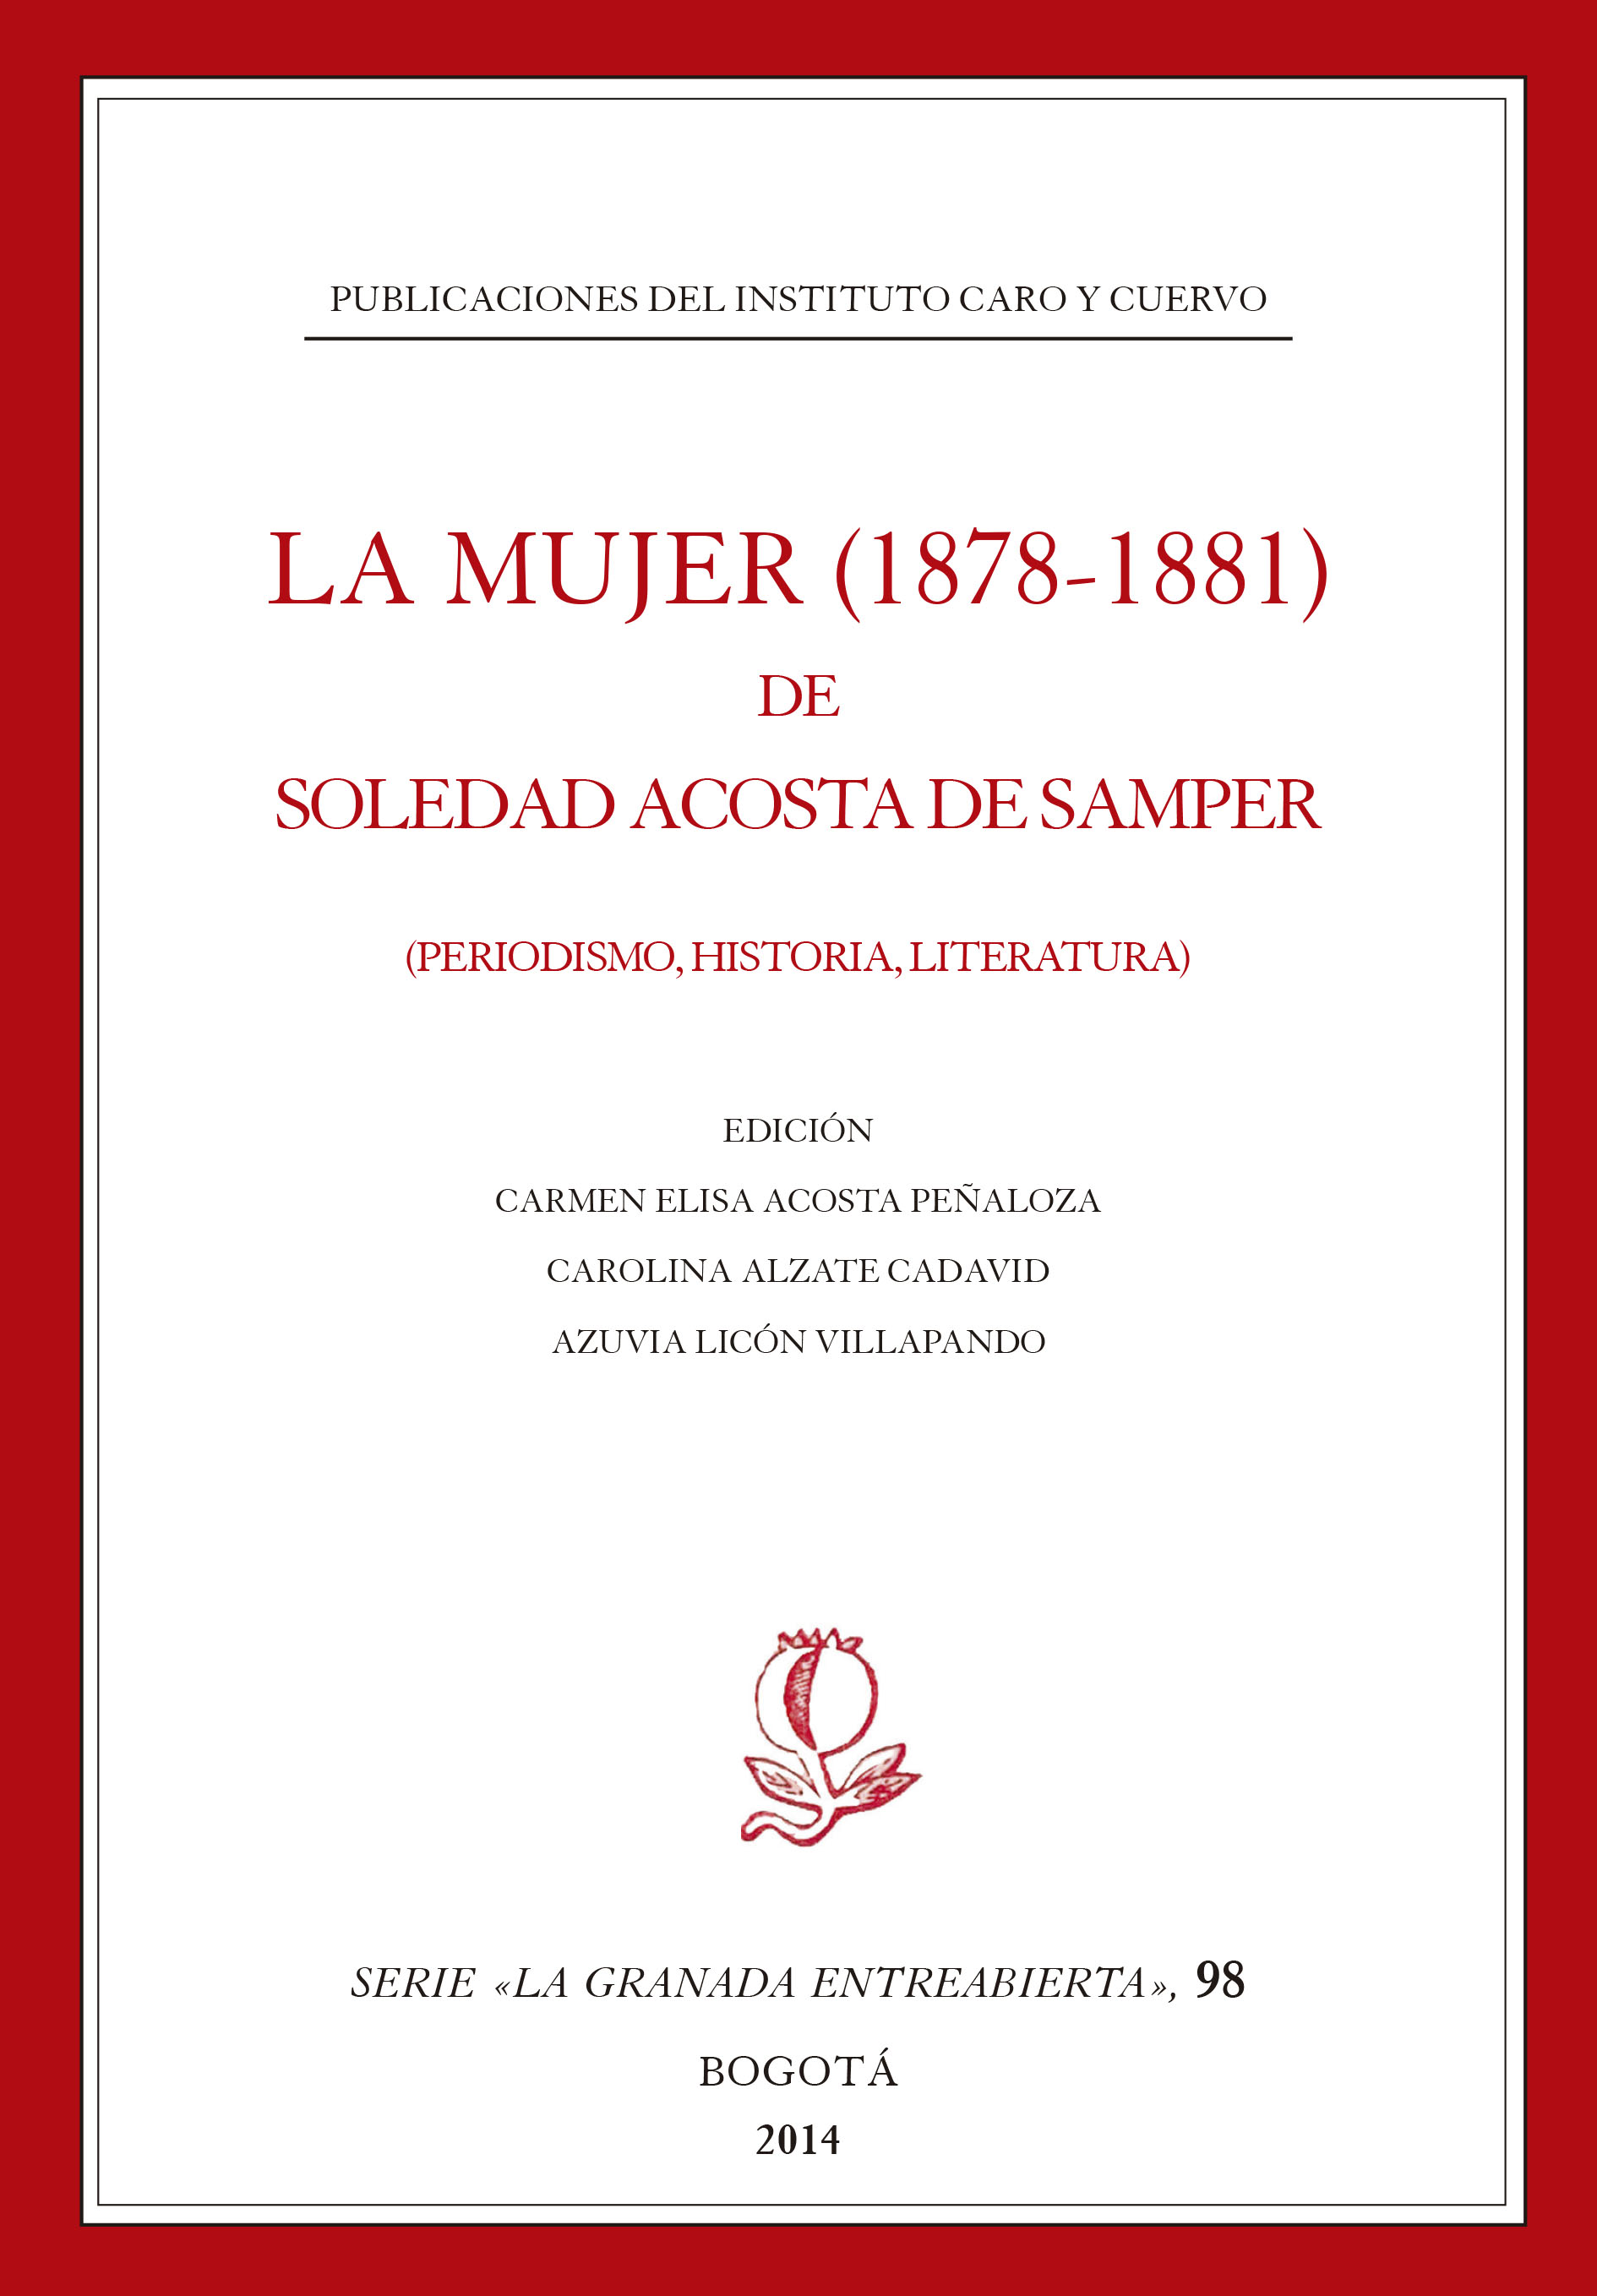 La mujer (1878-1881). Periodismo, historia, literatura